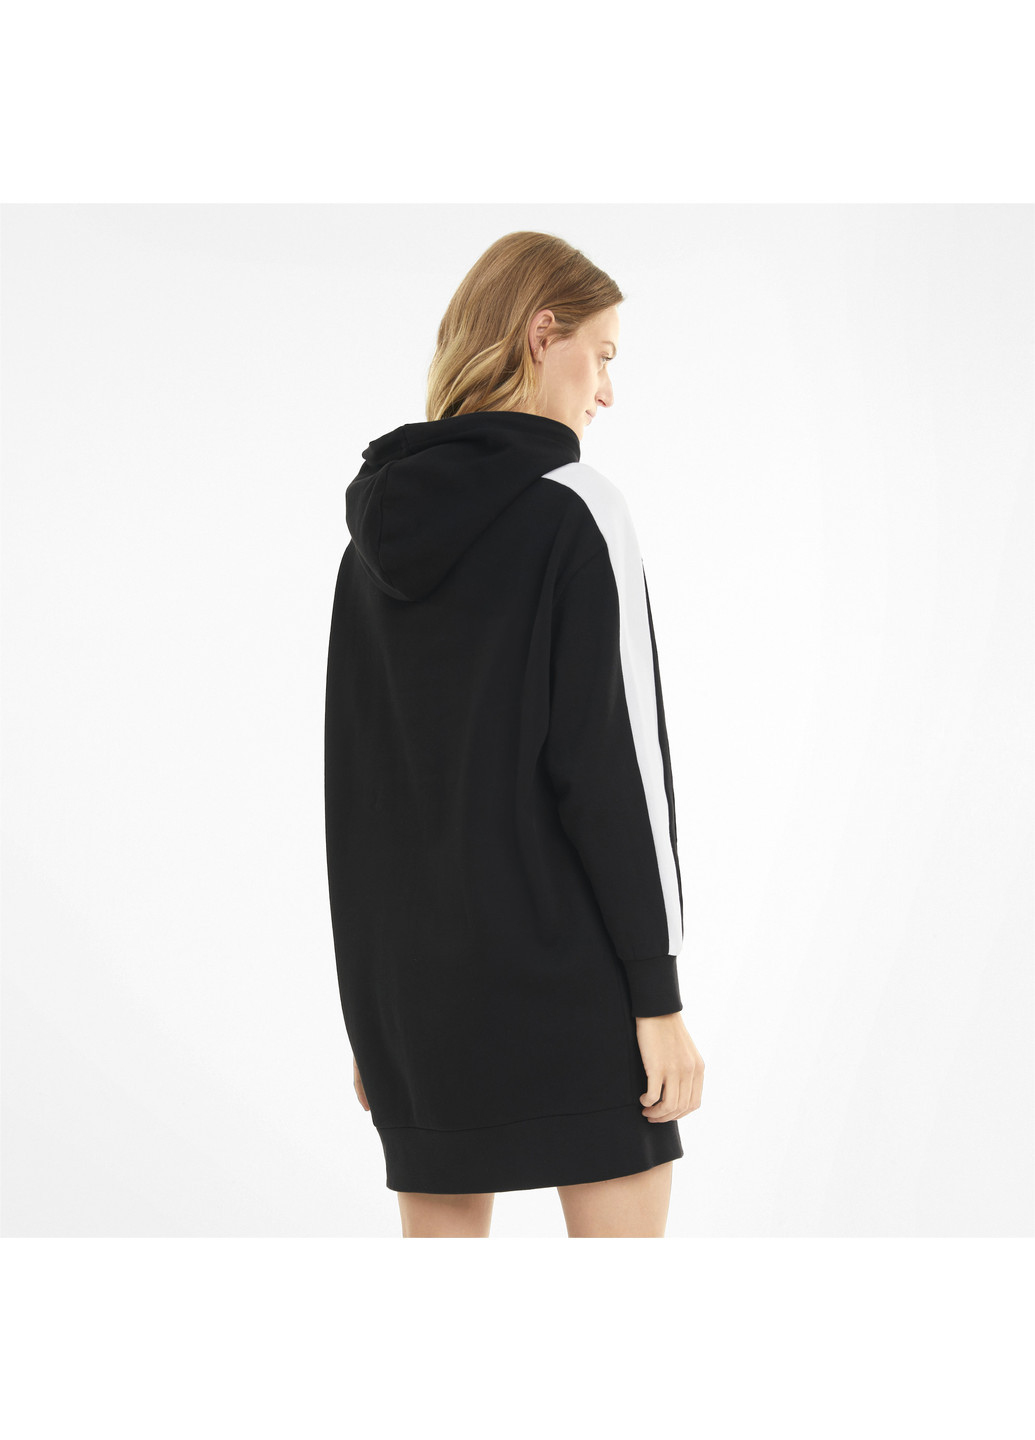 Чорна спортивна сукня iconic hooded women's dress Puma однотонна